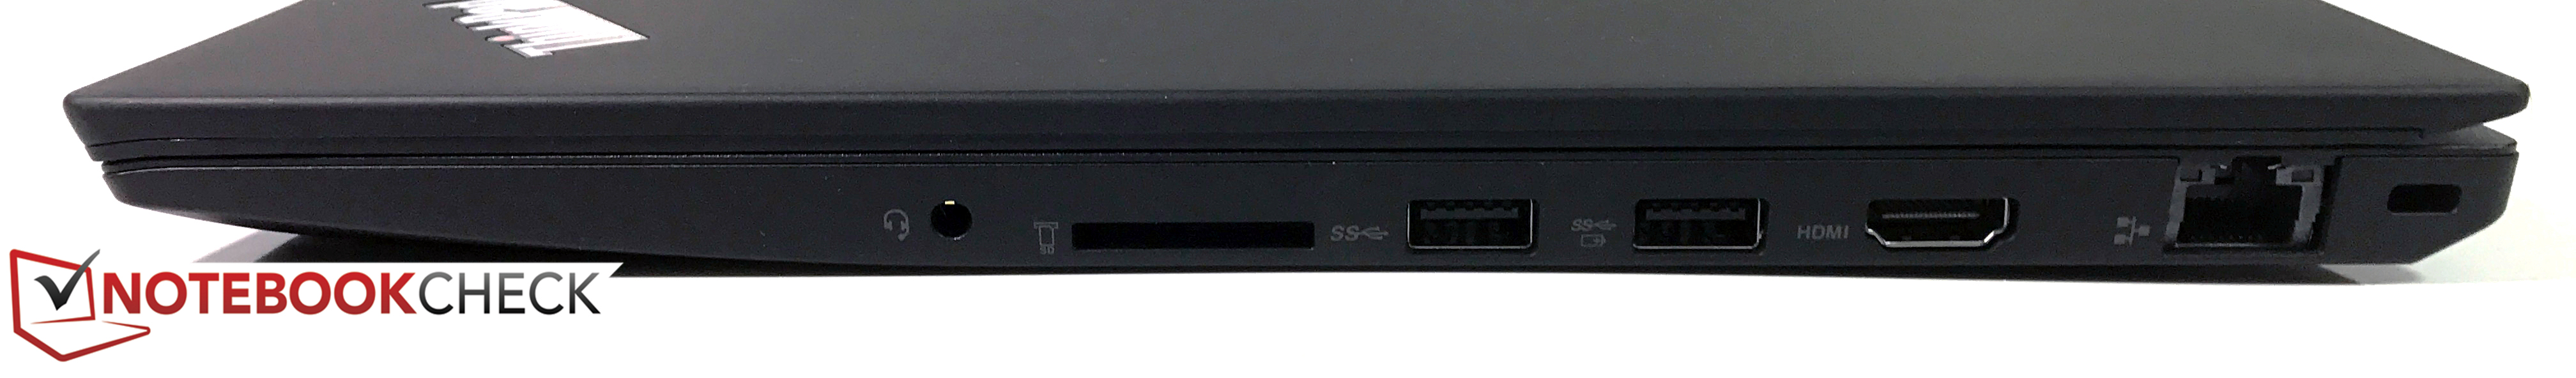 справа: 3.5-мм аудиопорт, адаптер карт SD, 2x USB 3.0 (1x всегда включен), HDMI 1.4b, сеть RJ45, замок Kensington Lock